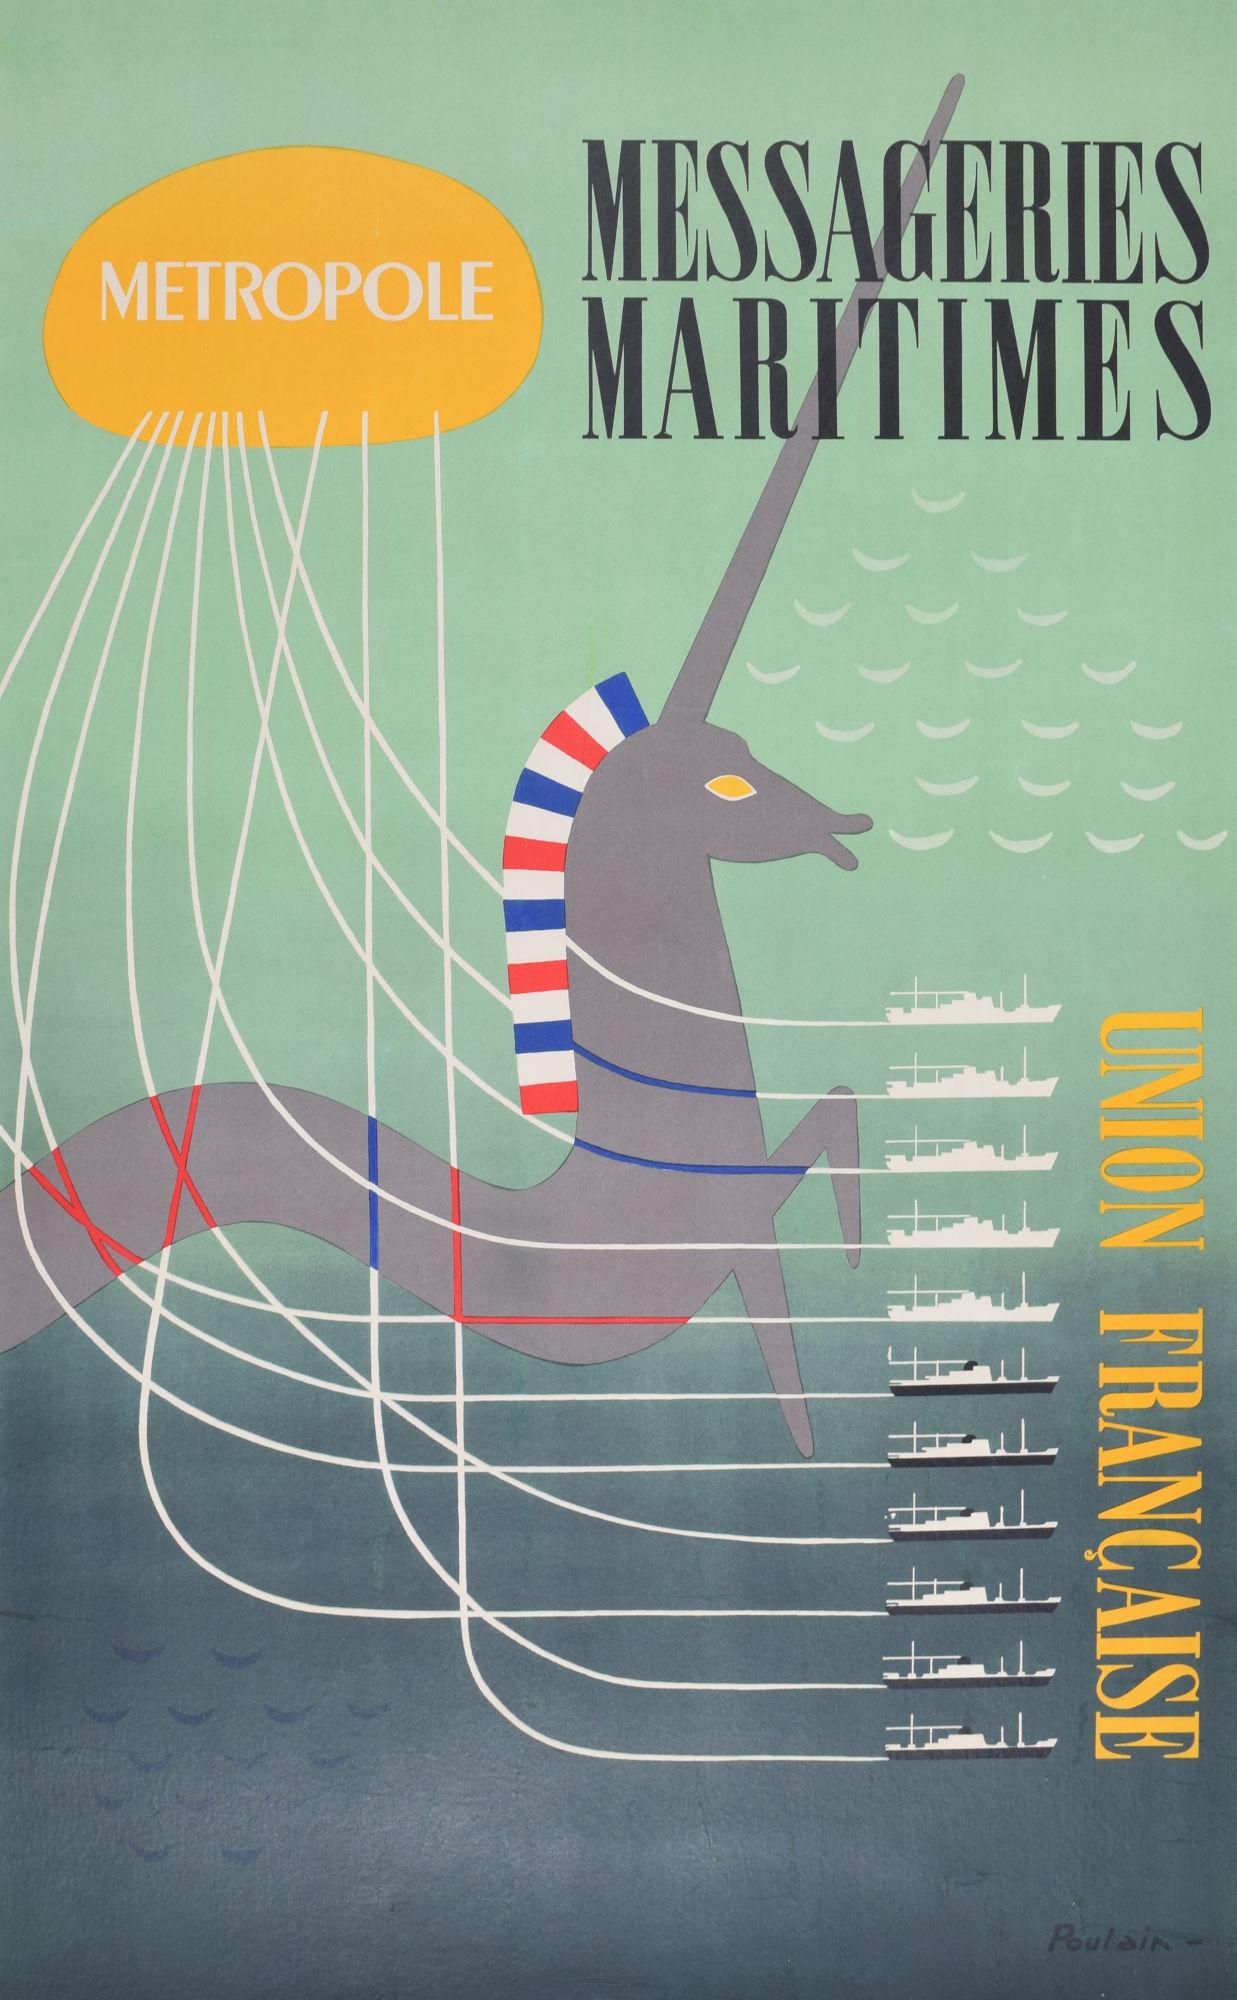 Messageries Maritimes - Union Francaise original vintage poster by Poulain